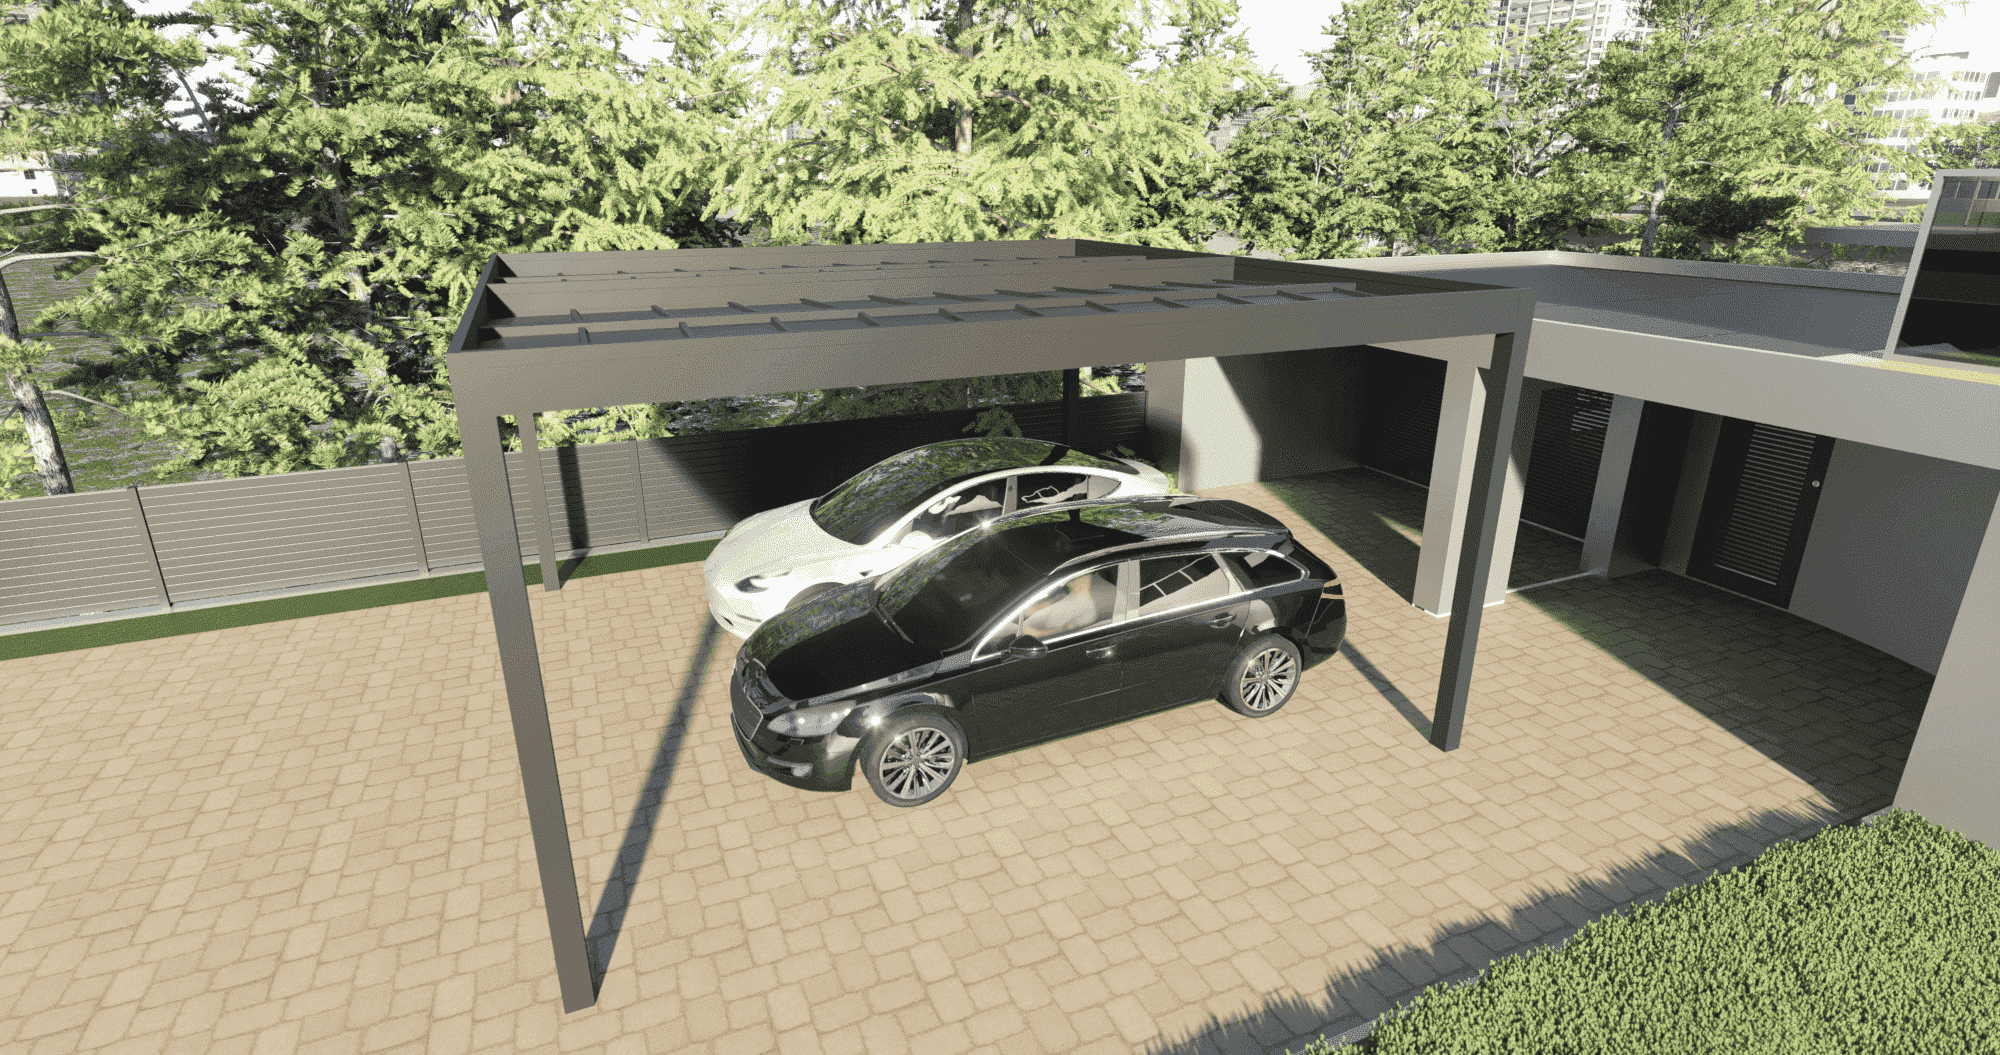 Carport toit plat : abri de voiture toit plat pose adossée